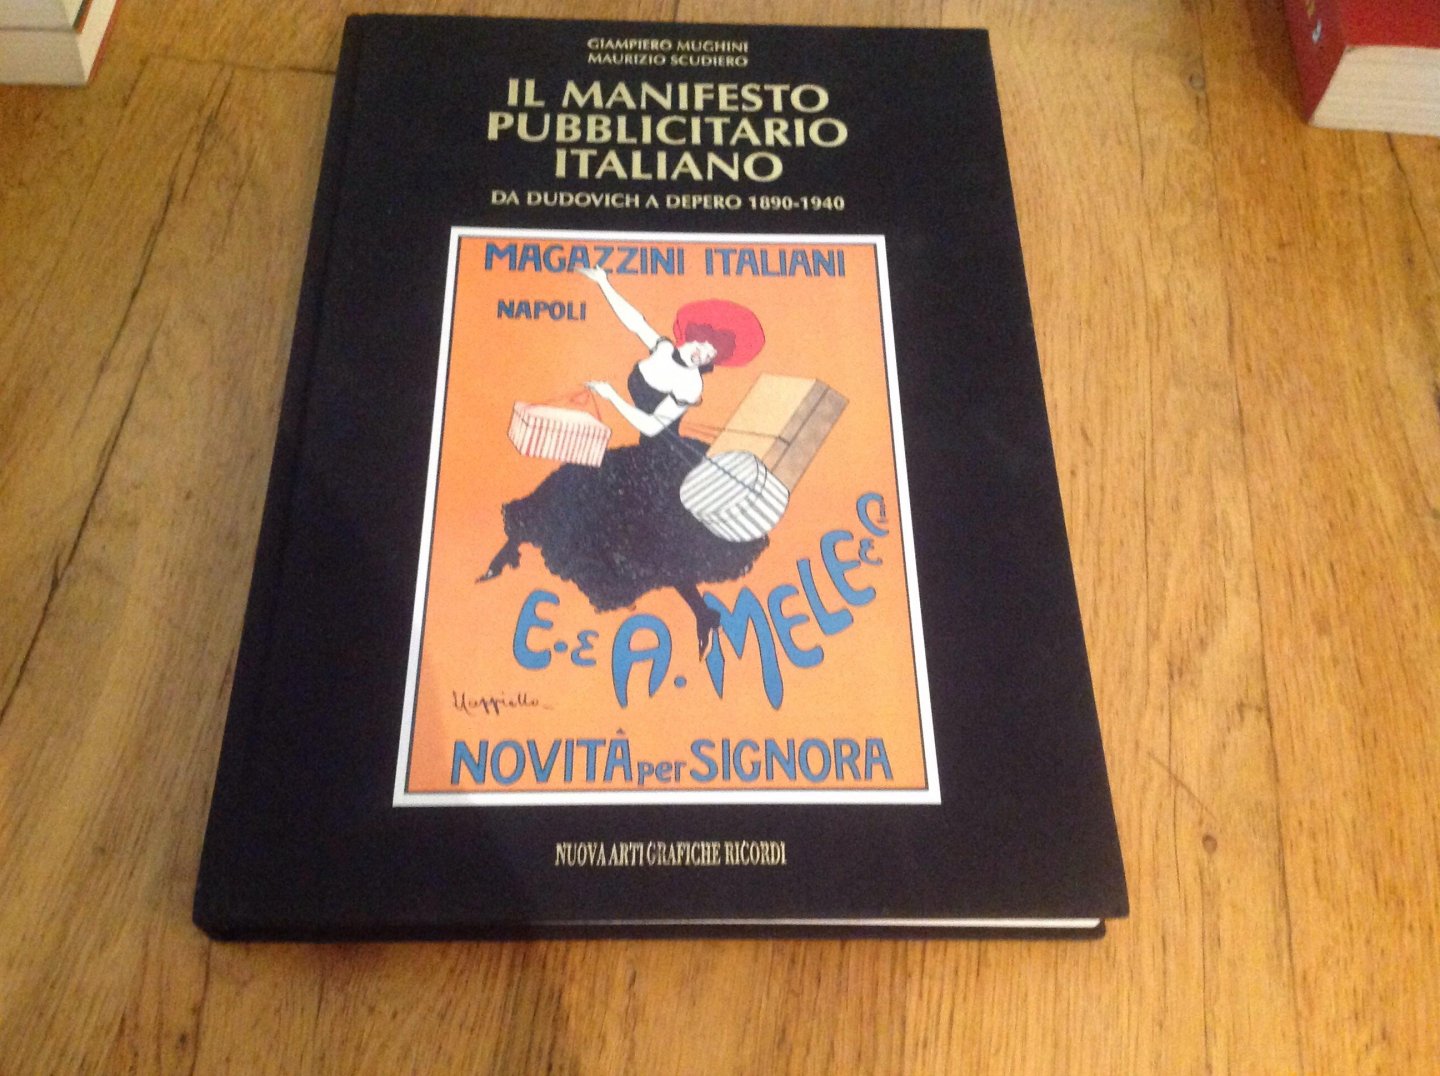 Giampiero Mughini - Ik Manifesto Pubblicitario Italiano